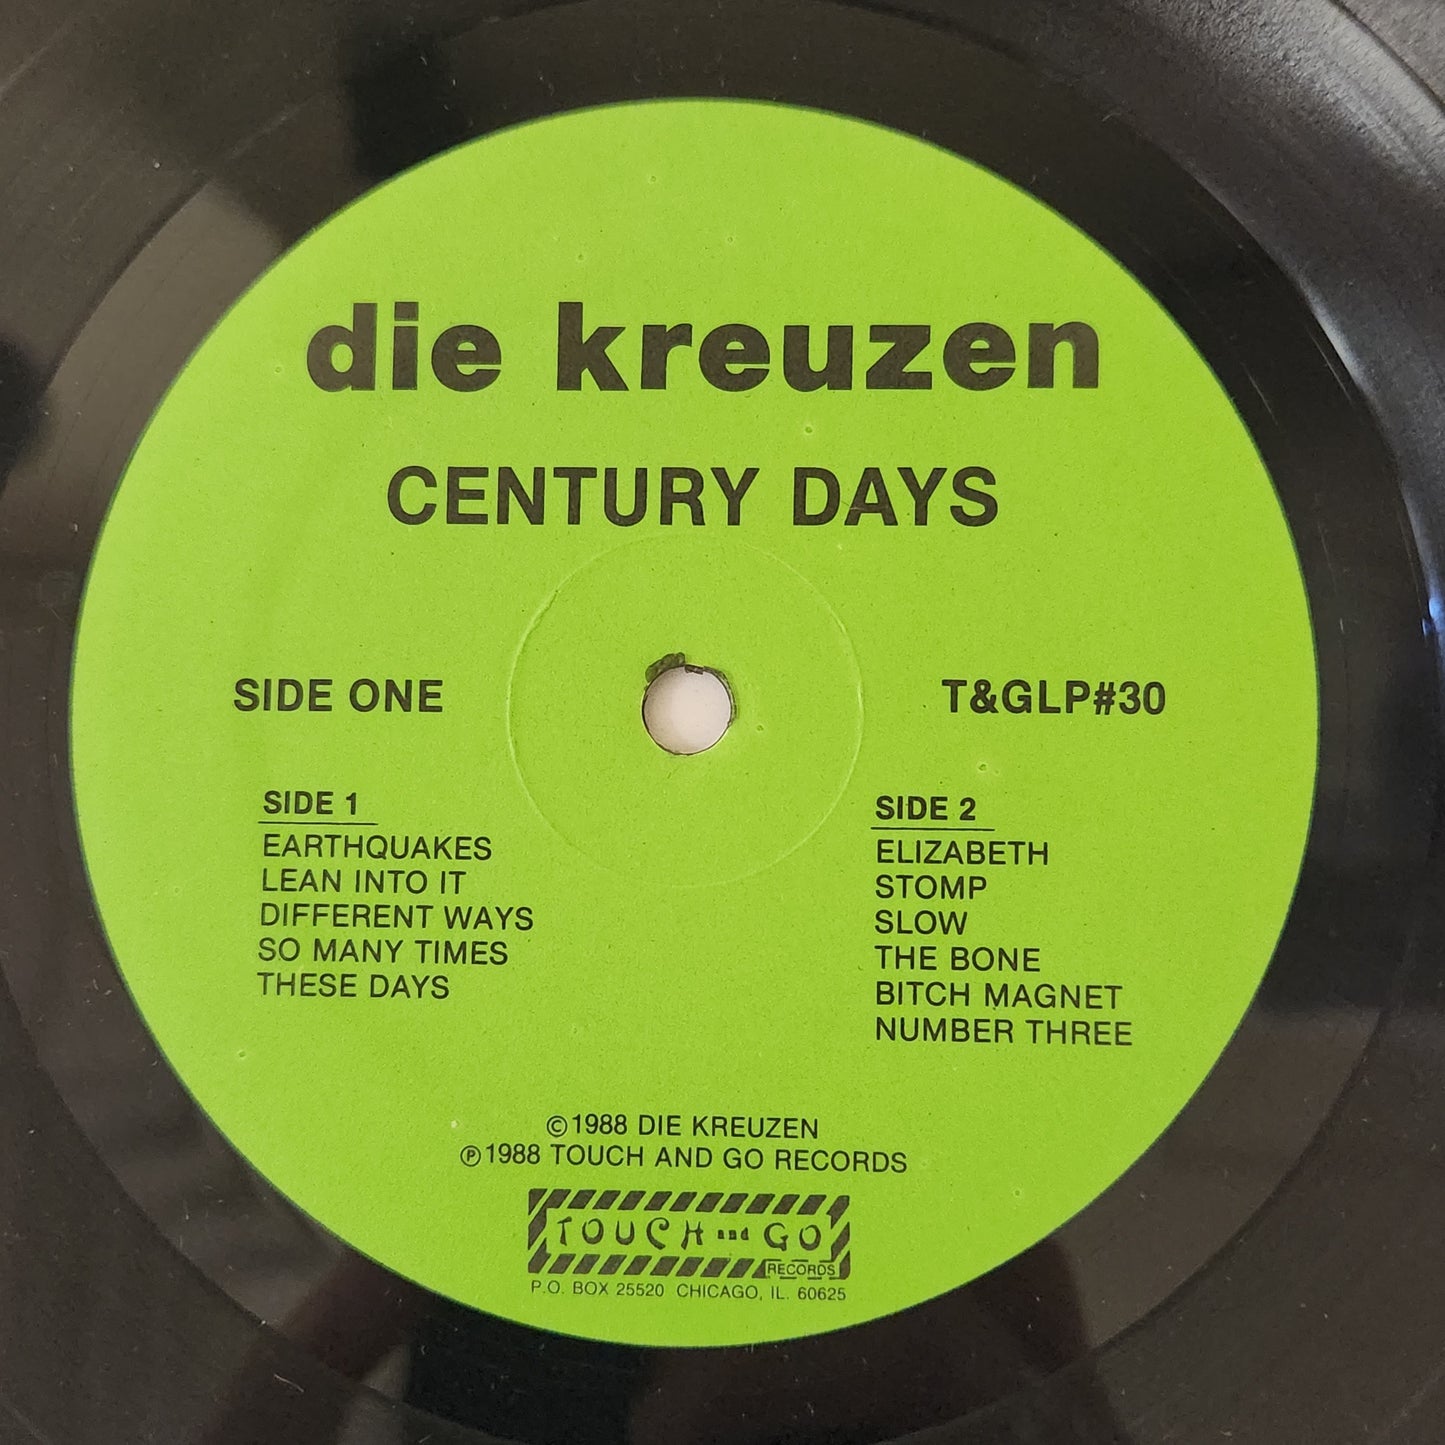 Die Kreuzen "Century Days" 1988 Punk Rock Record Album With Poster